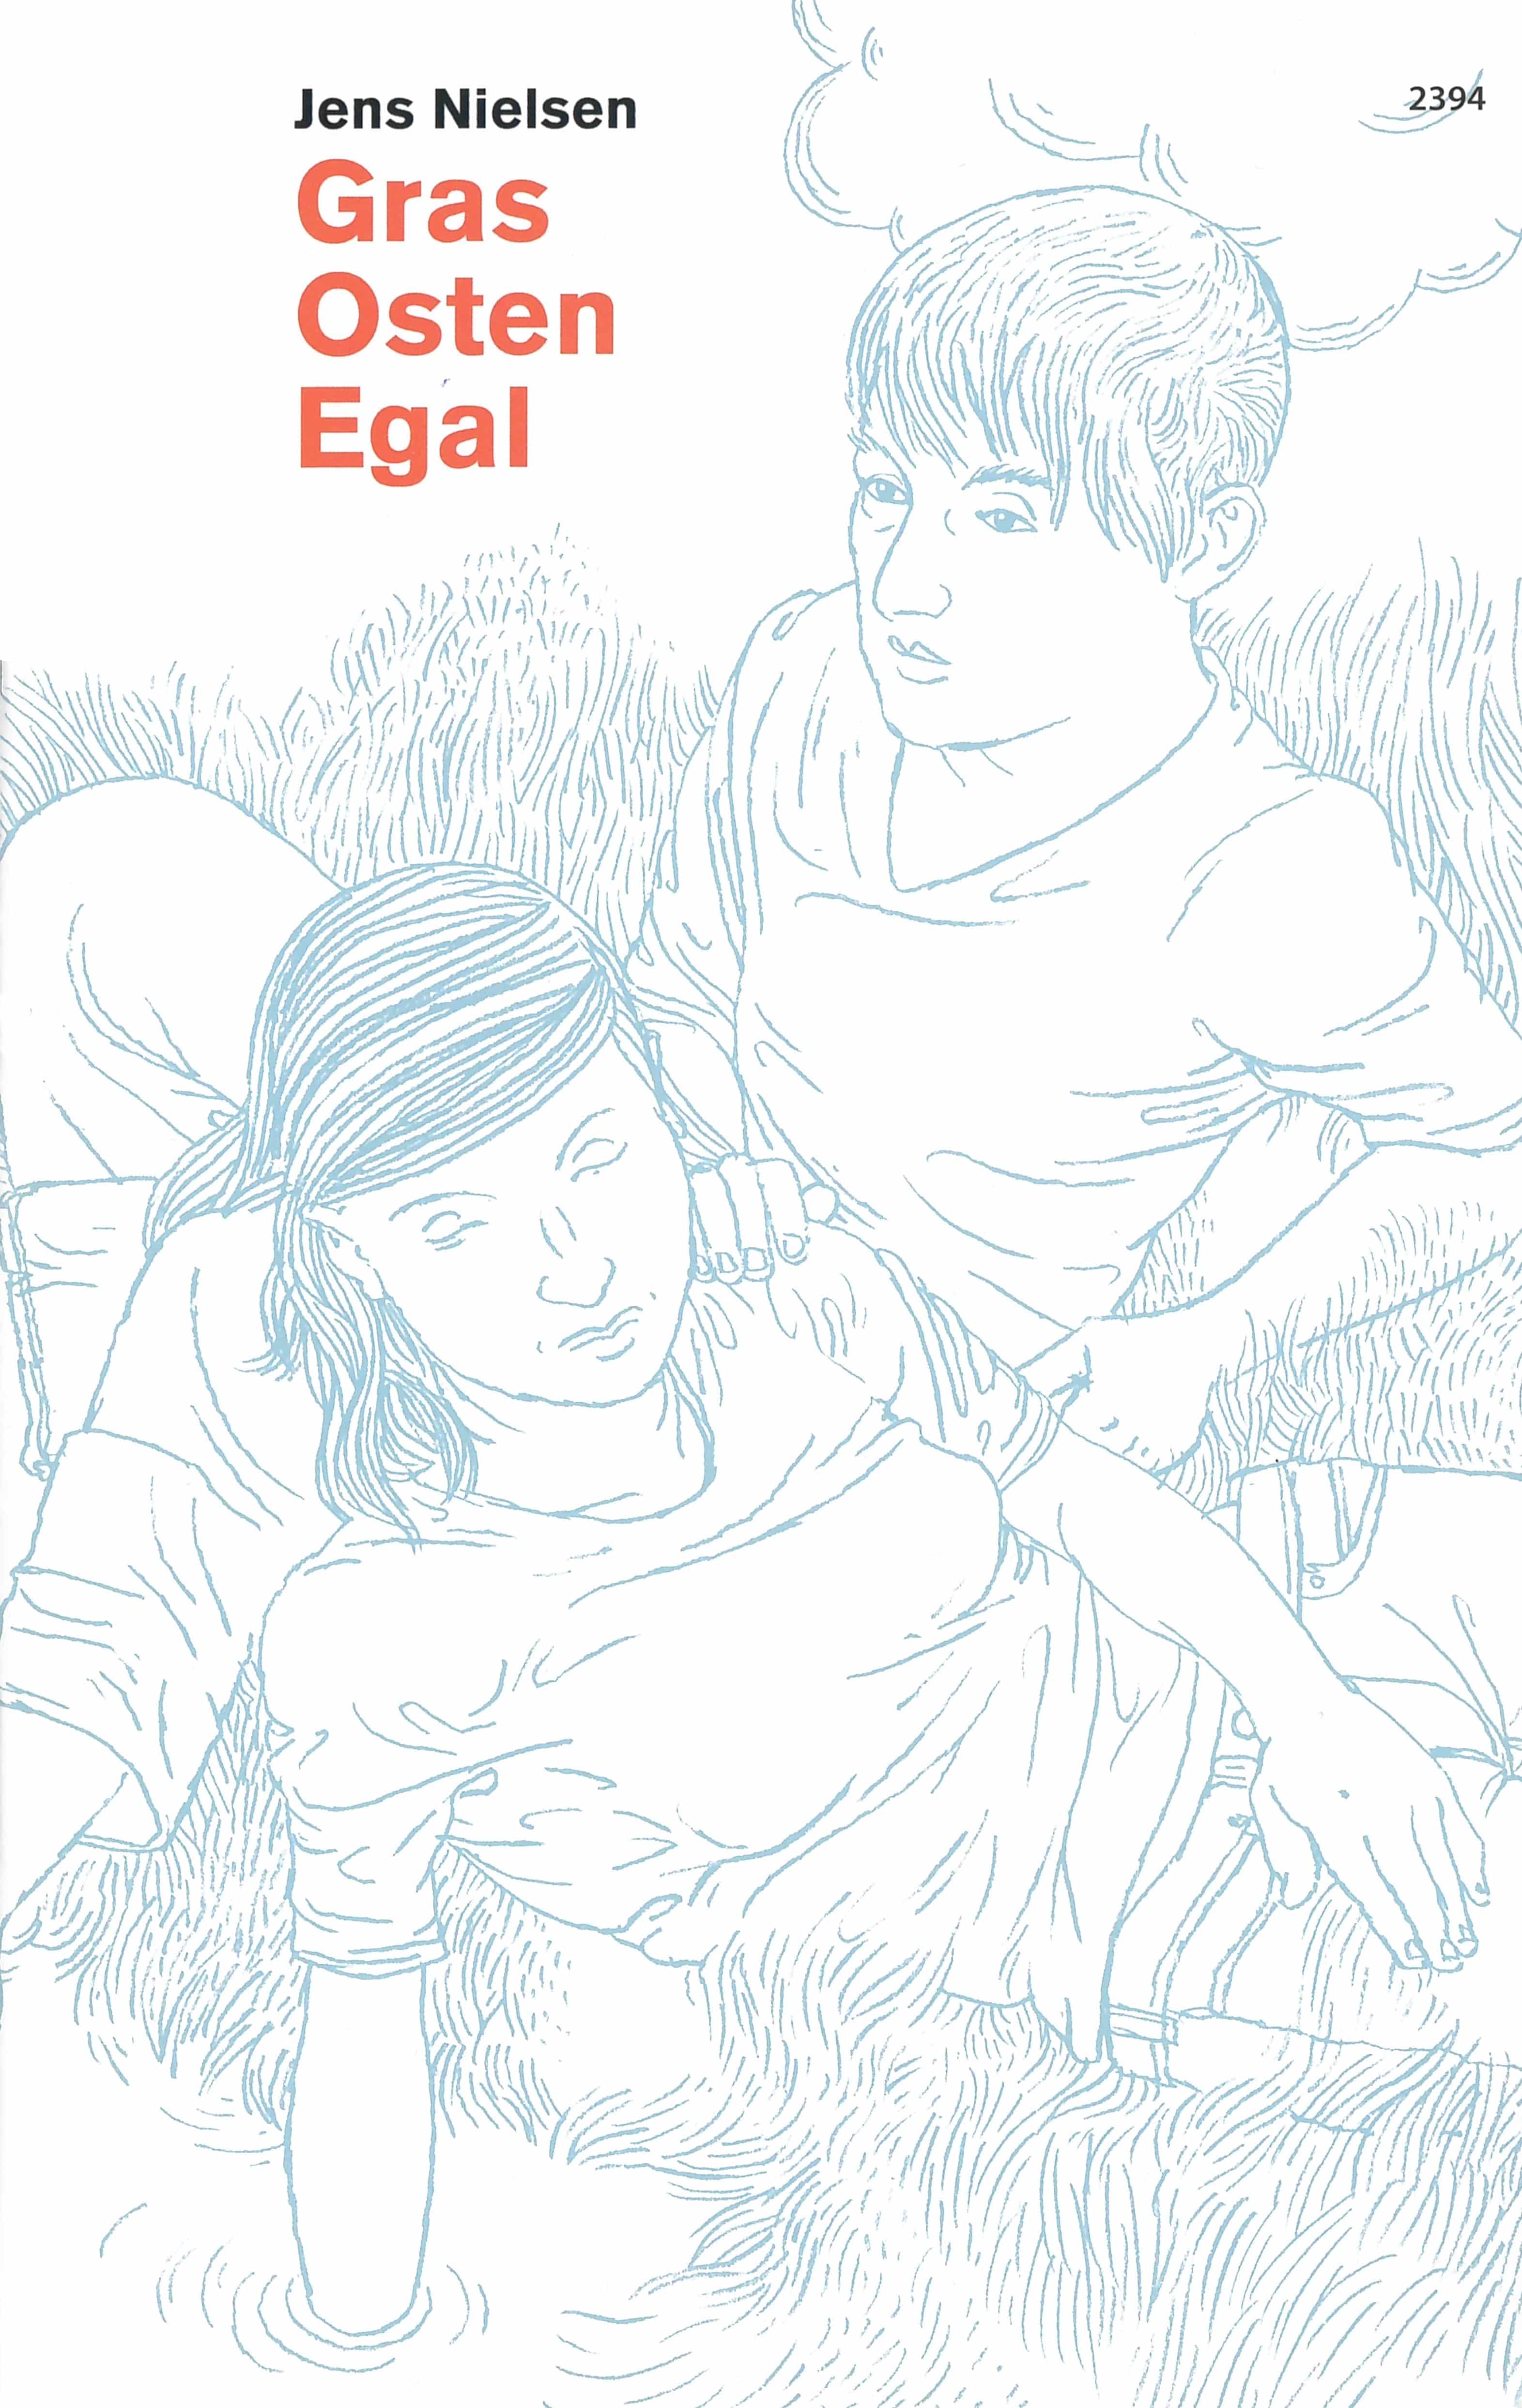 Gras Osten Egal, ein Buch von Jens Nielsen, Illustration von Andreas Gefe, SJW Verlag, Sprachspiele